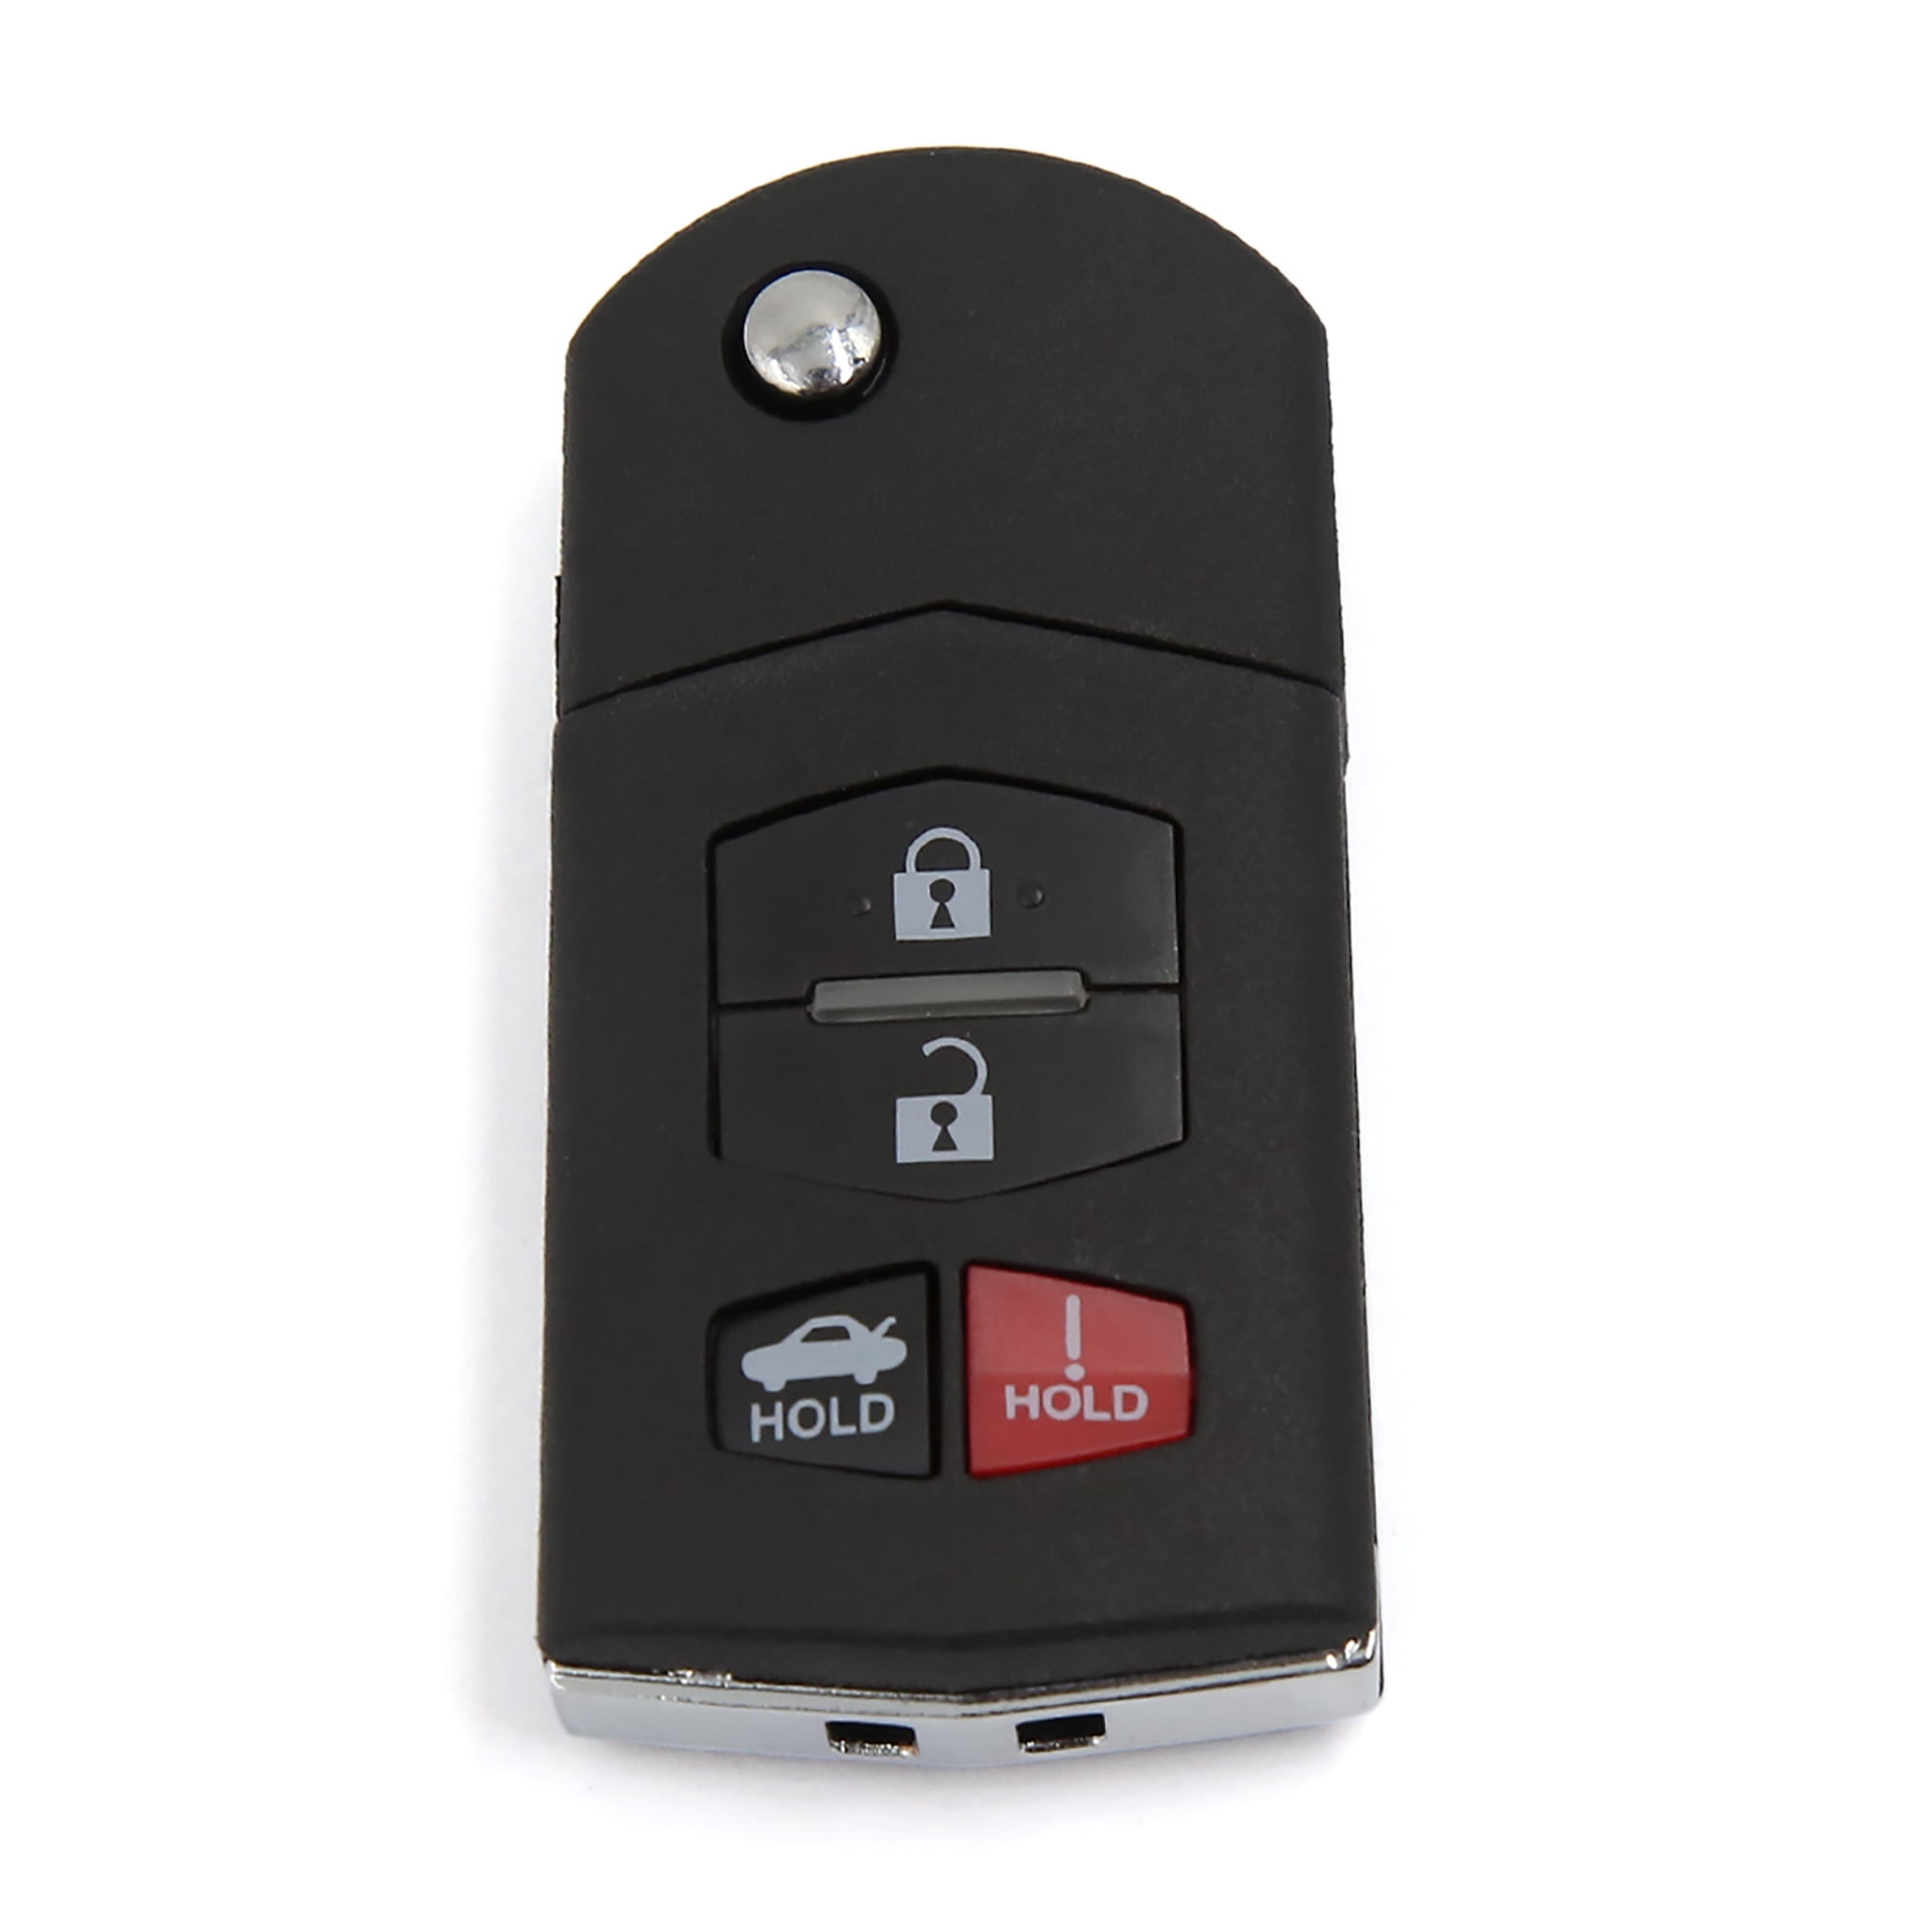 2 Brand New Flip Key Keyless Entry Remote Fob Transmitter For 2012 2013 Mazda 